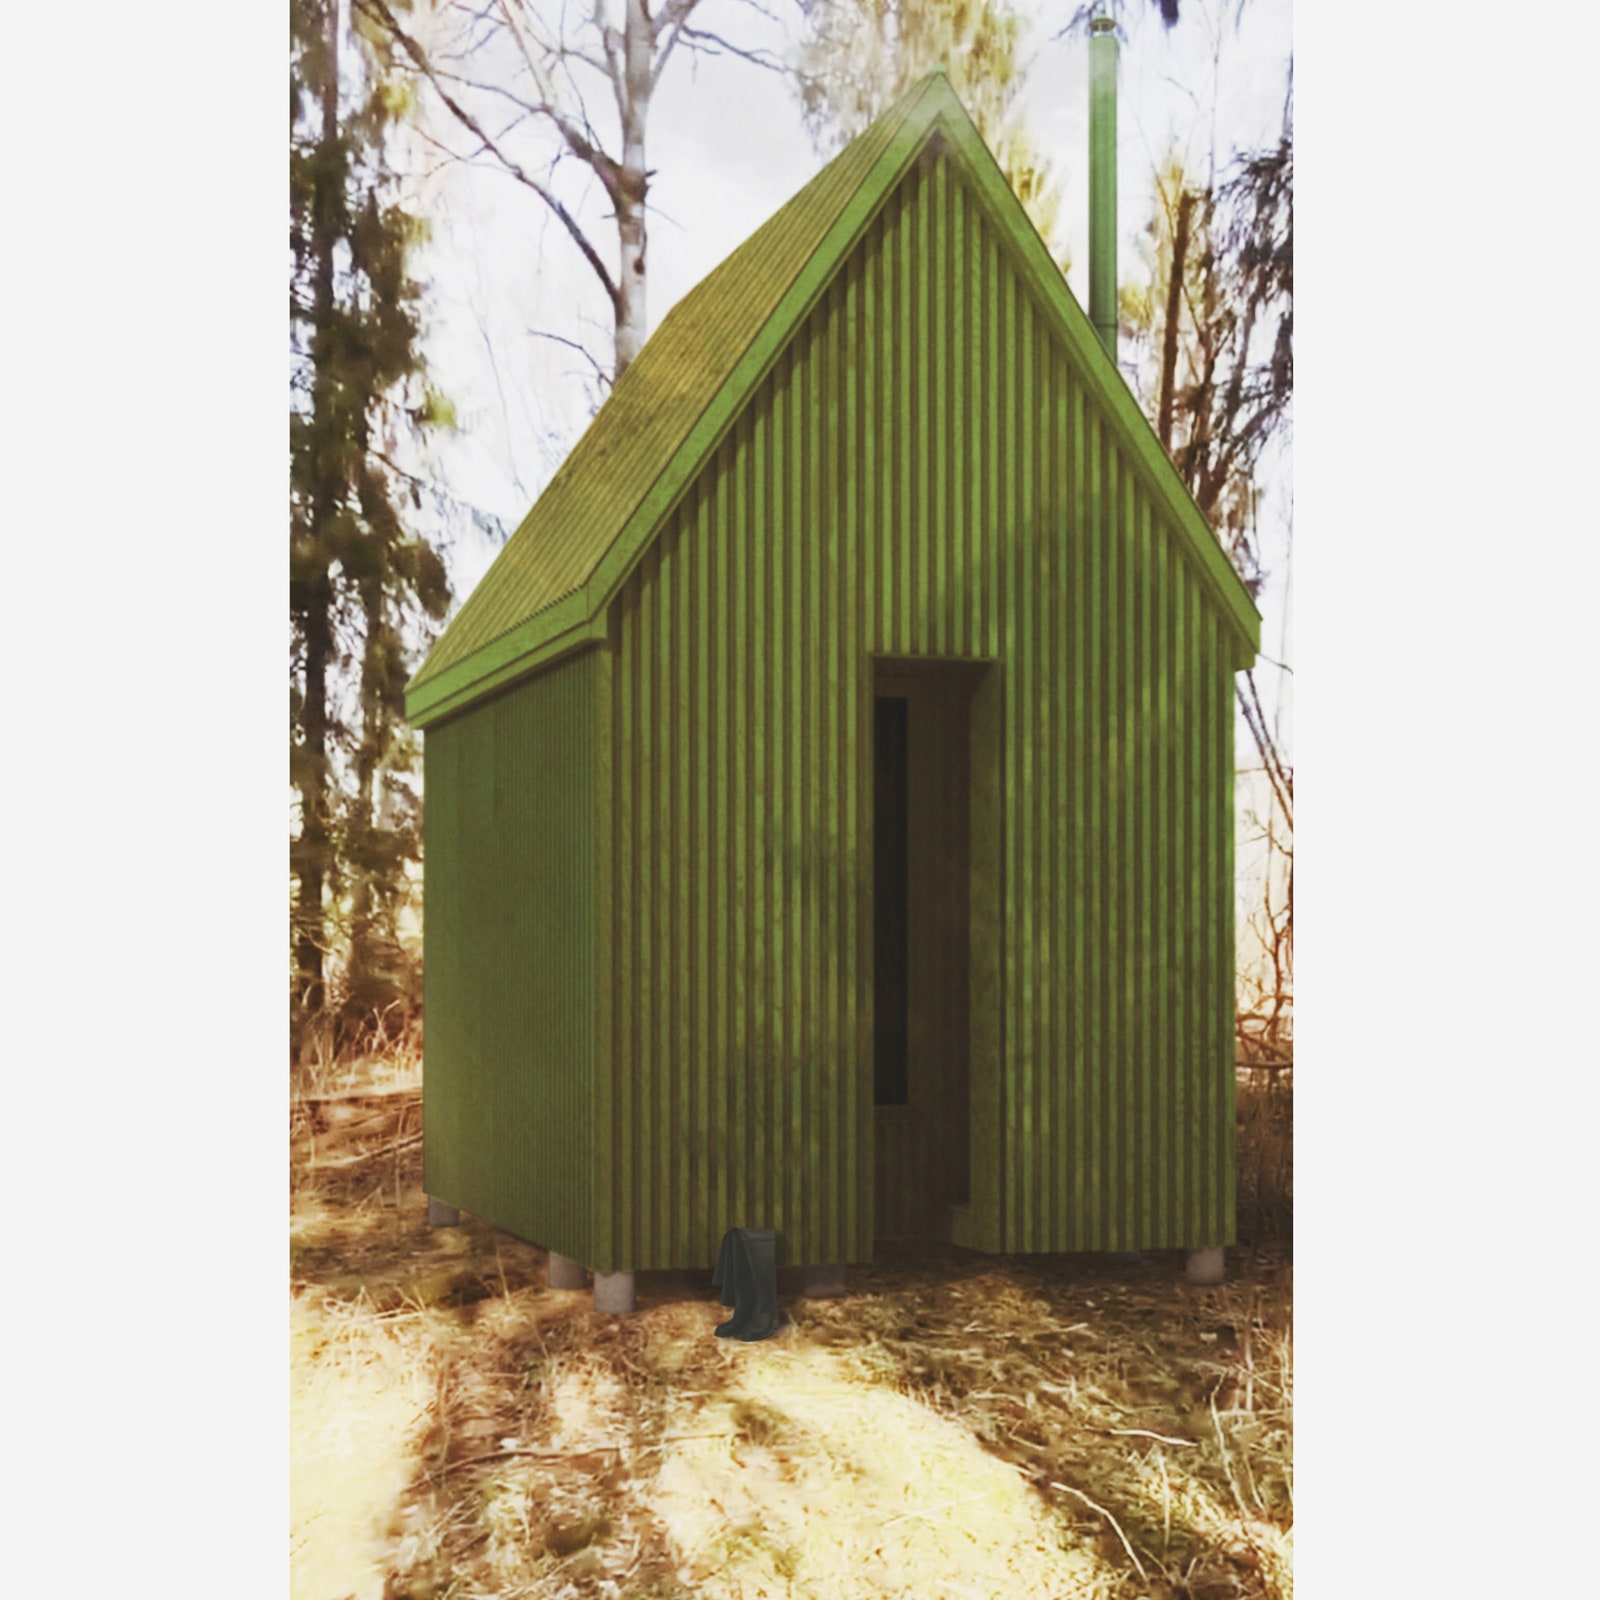 “Трансформер”. Автор Денис Гаврилин. “Небольшой и на первый взгляд простой двускатный дом. Внутри него прячется...